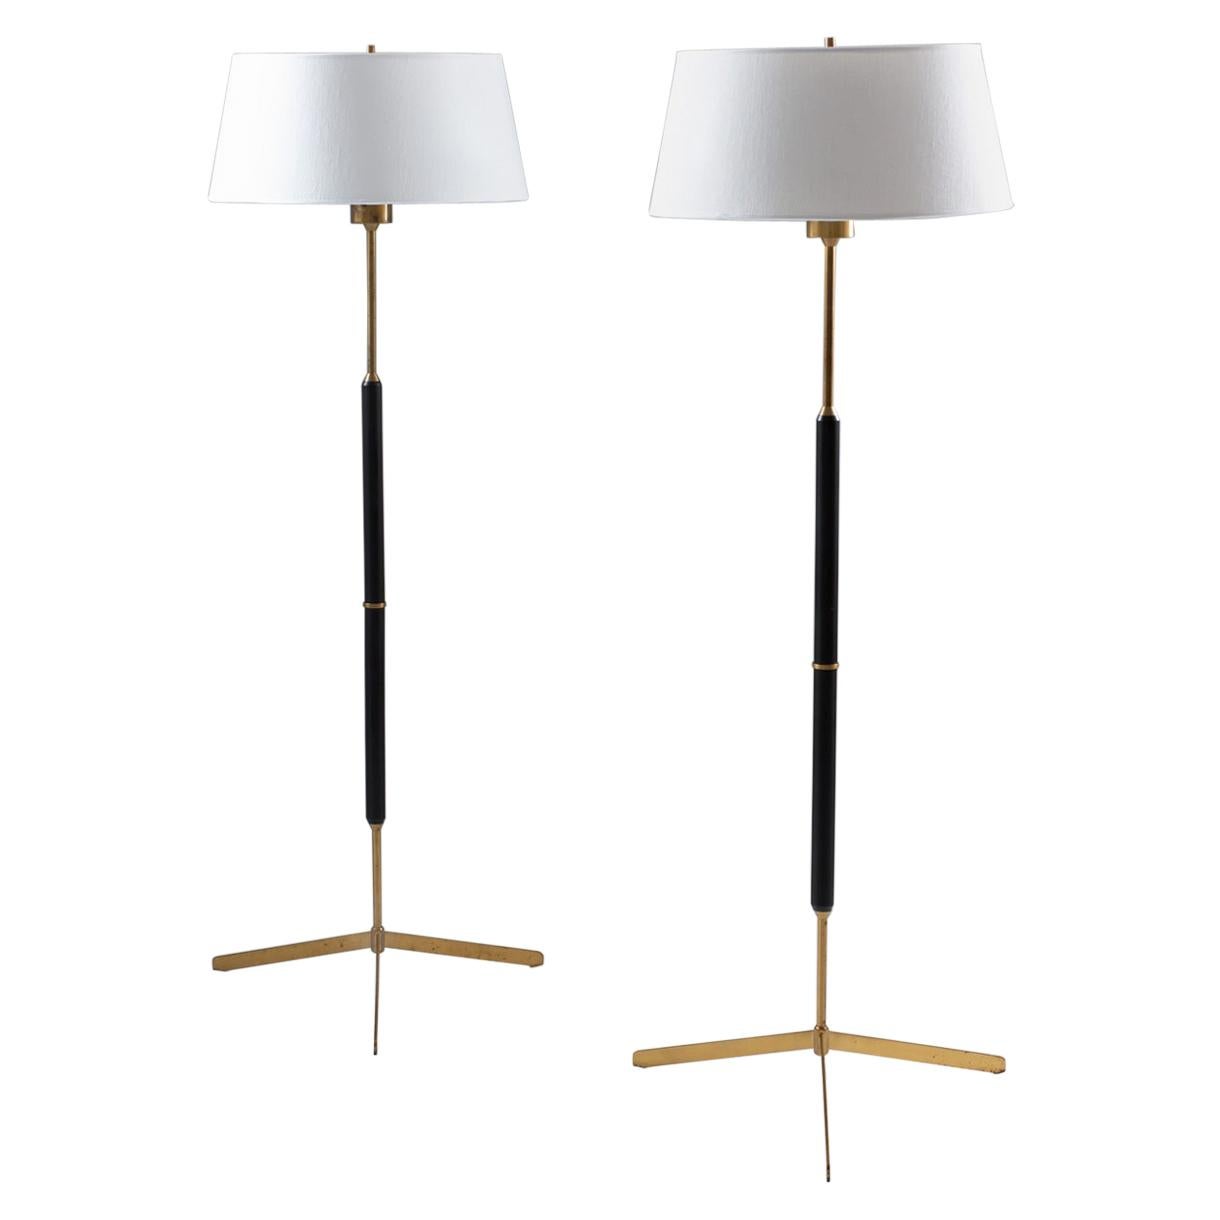 Scandinavian Midcentury Floor Lamps in Brass and Wood by Bergboms, Sweden